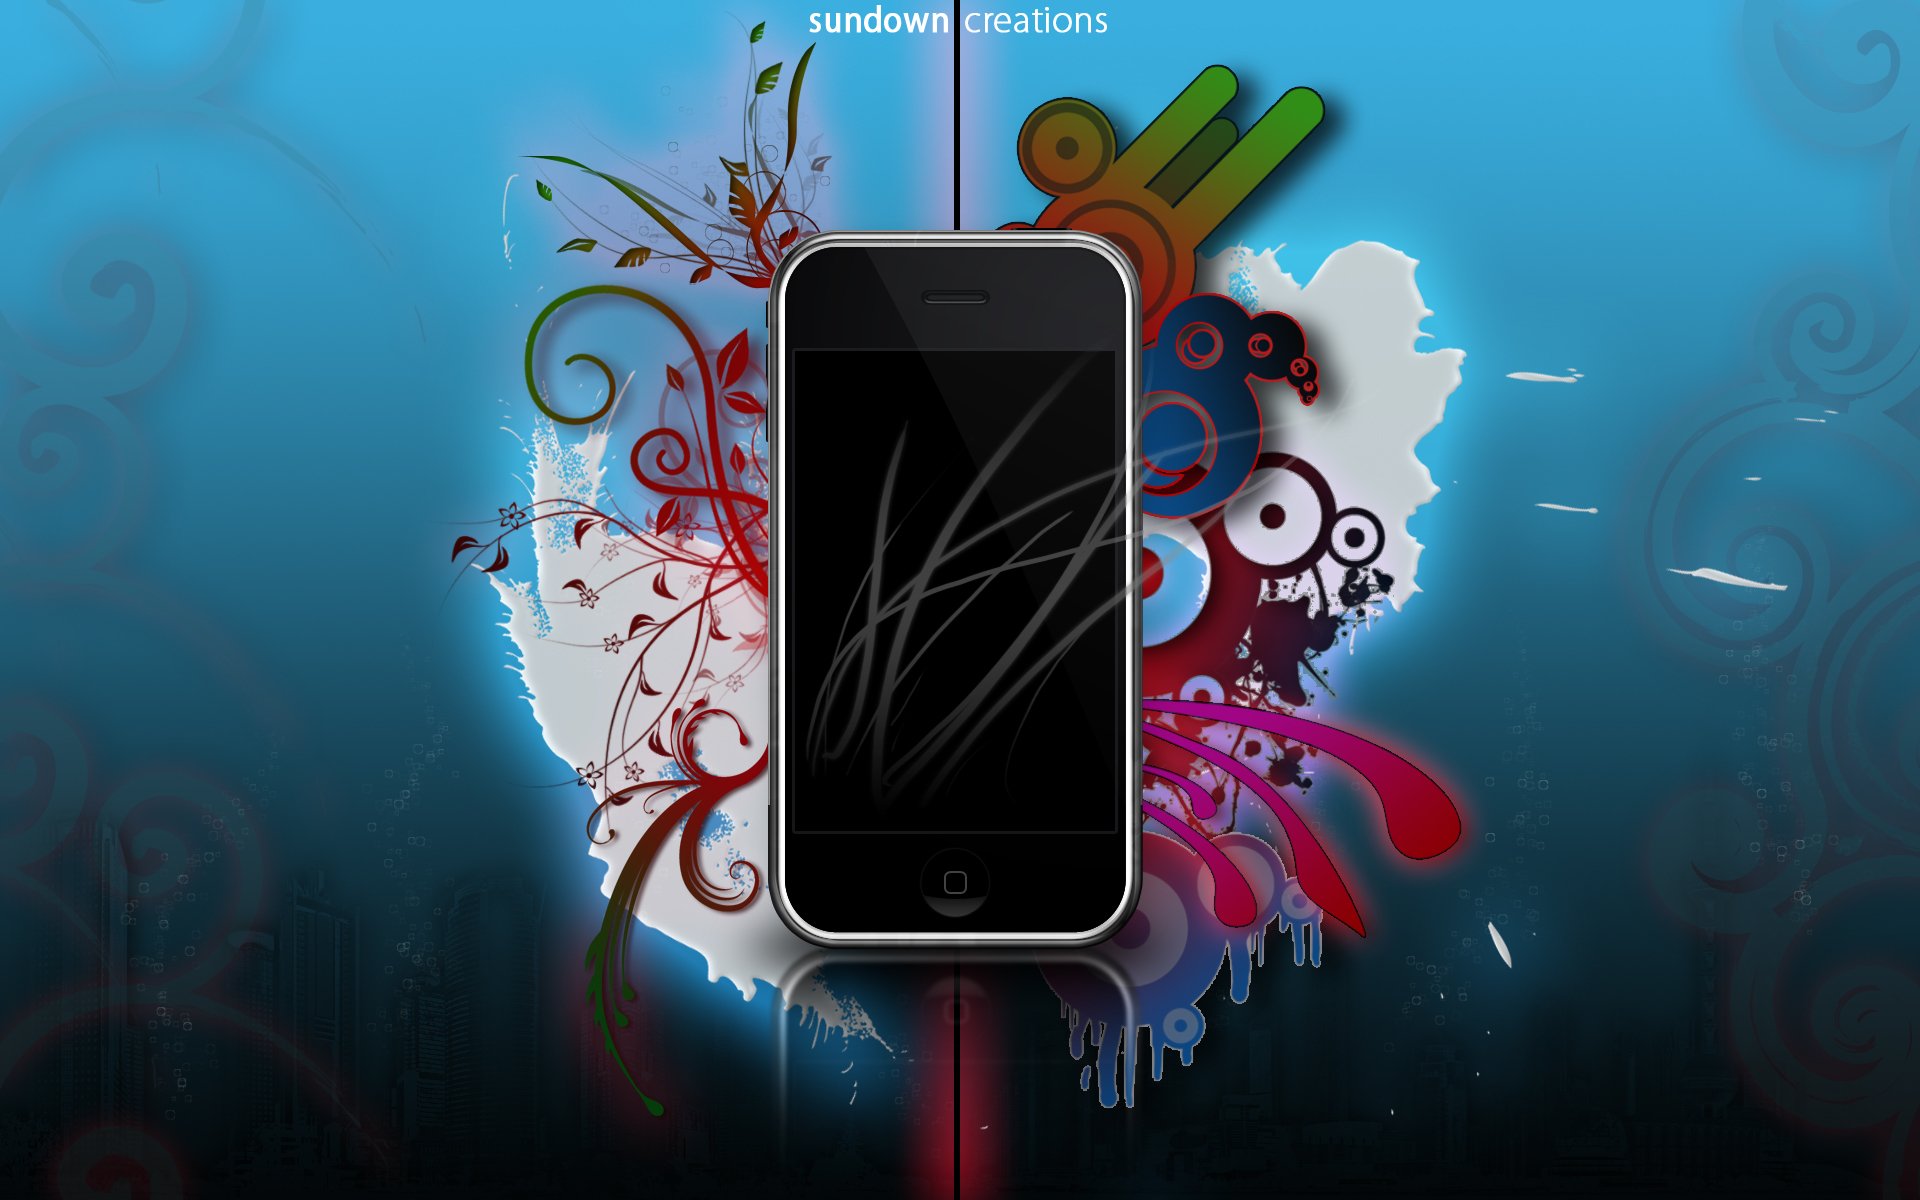 iphone прекрасные творения яблоко iphone 5c ios 7 смартфон цвета